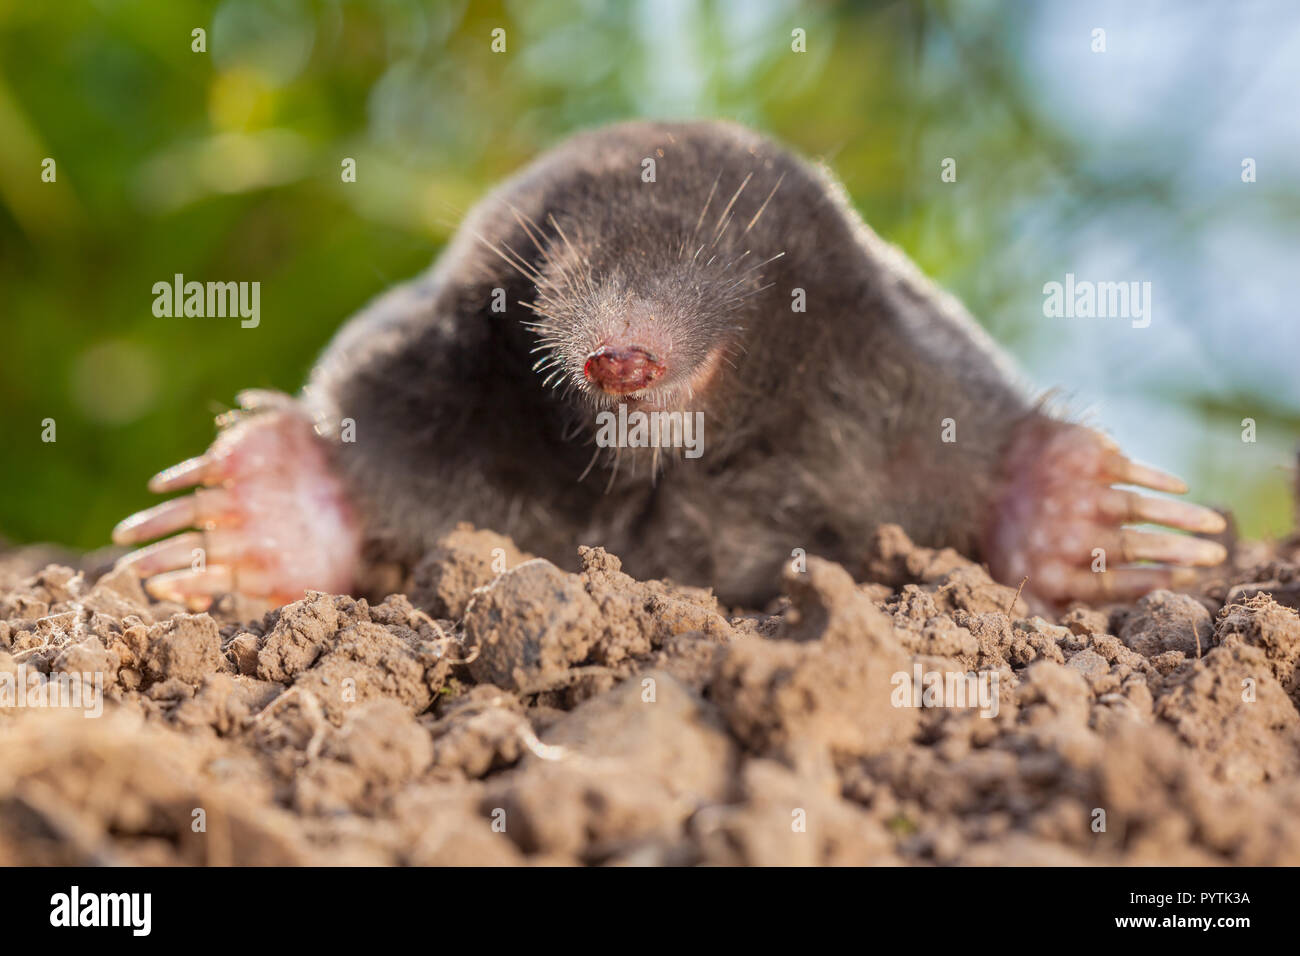 Ritratto di unione mole o mole comune (Talpa europaea) Questo è un mammifero dell'ordine Soricomorpha e molto comune in Europa. Foto Stock